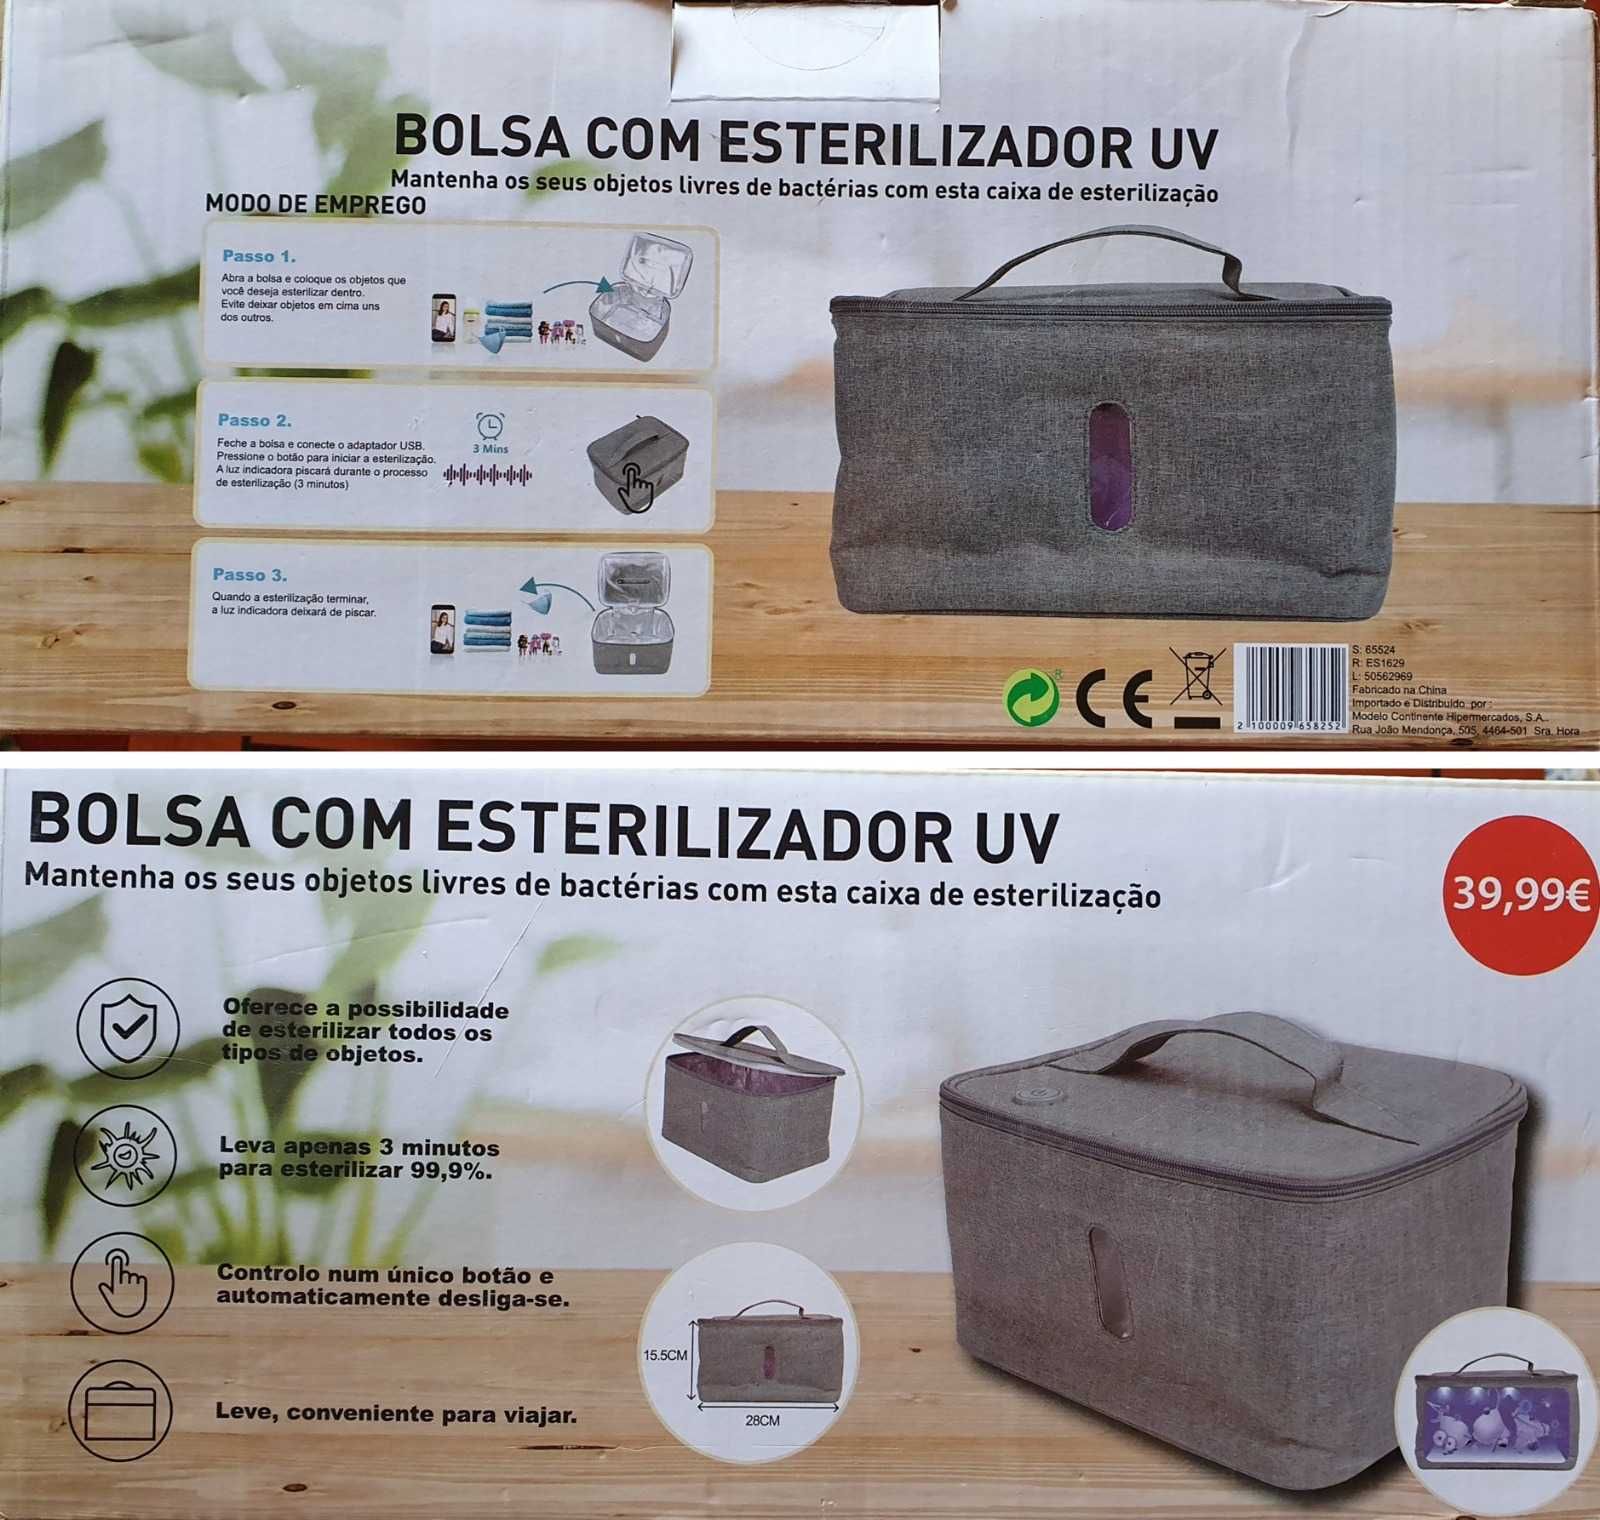 Bolsa com esterilizador UV (ultra violeta)